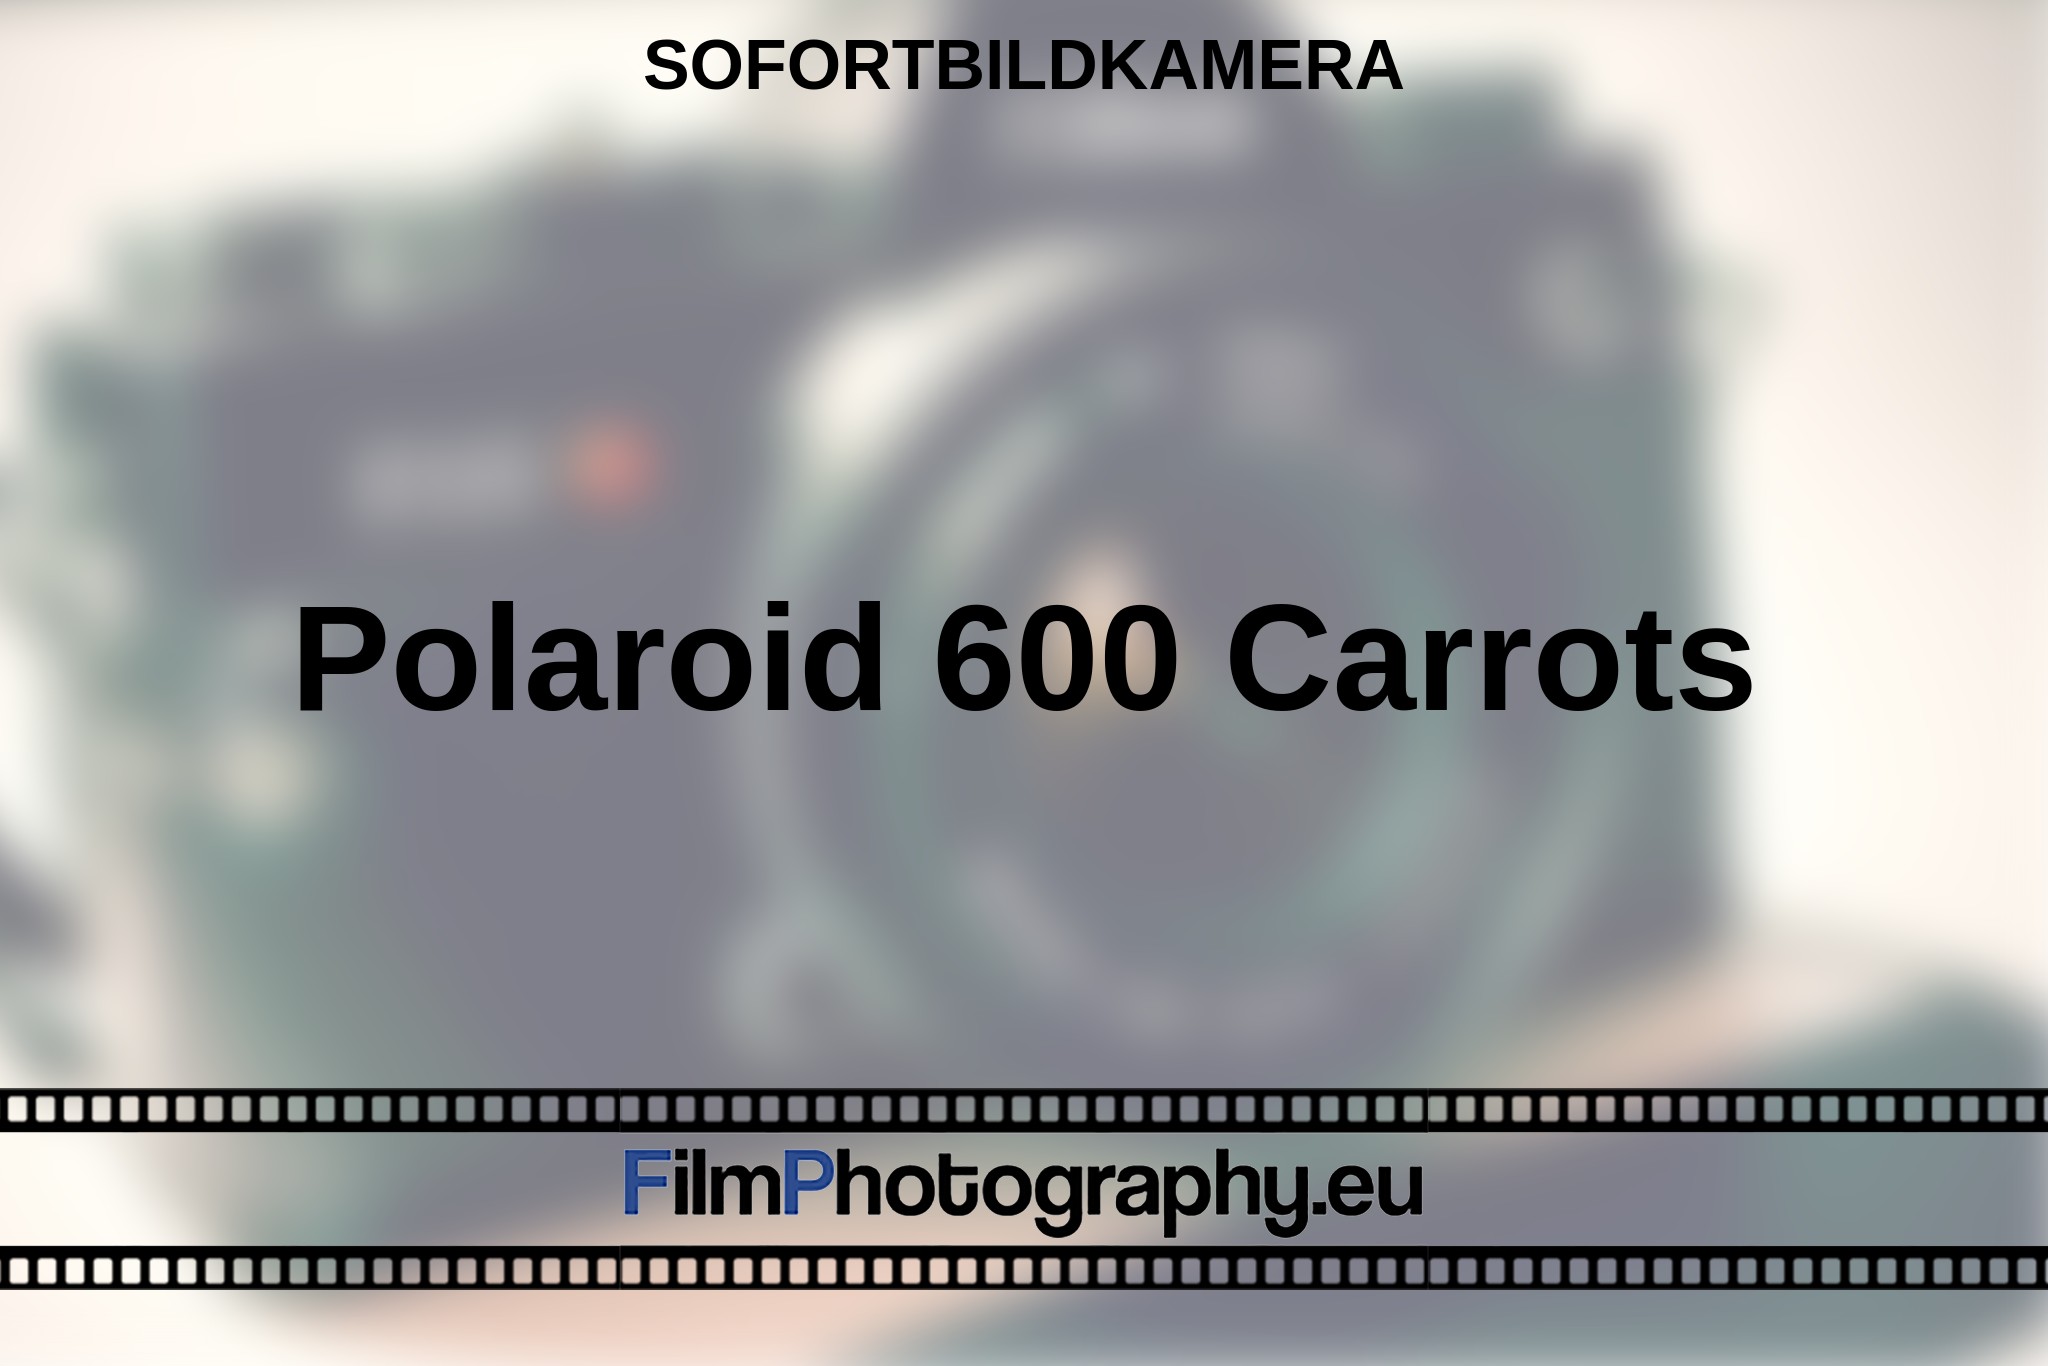 polaroid-600-carrots-sofortbildkamera-bnv.jpg